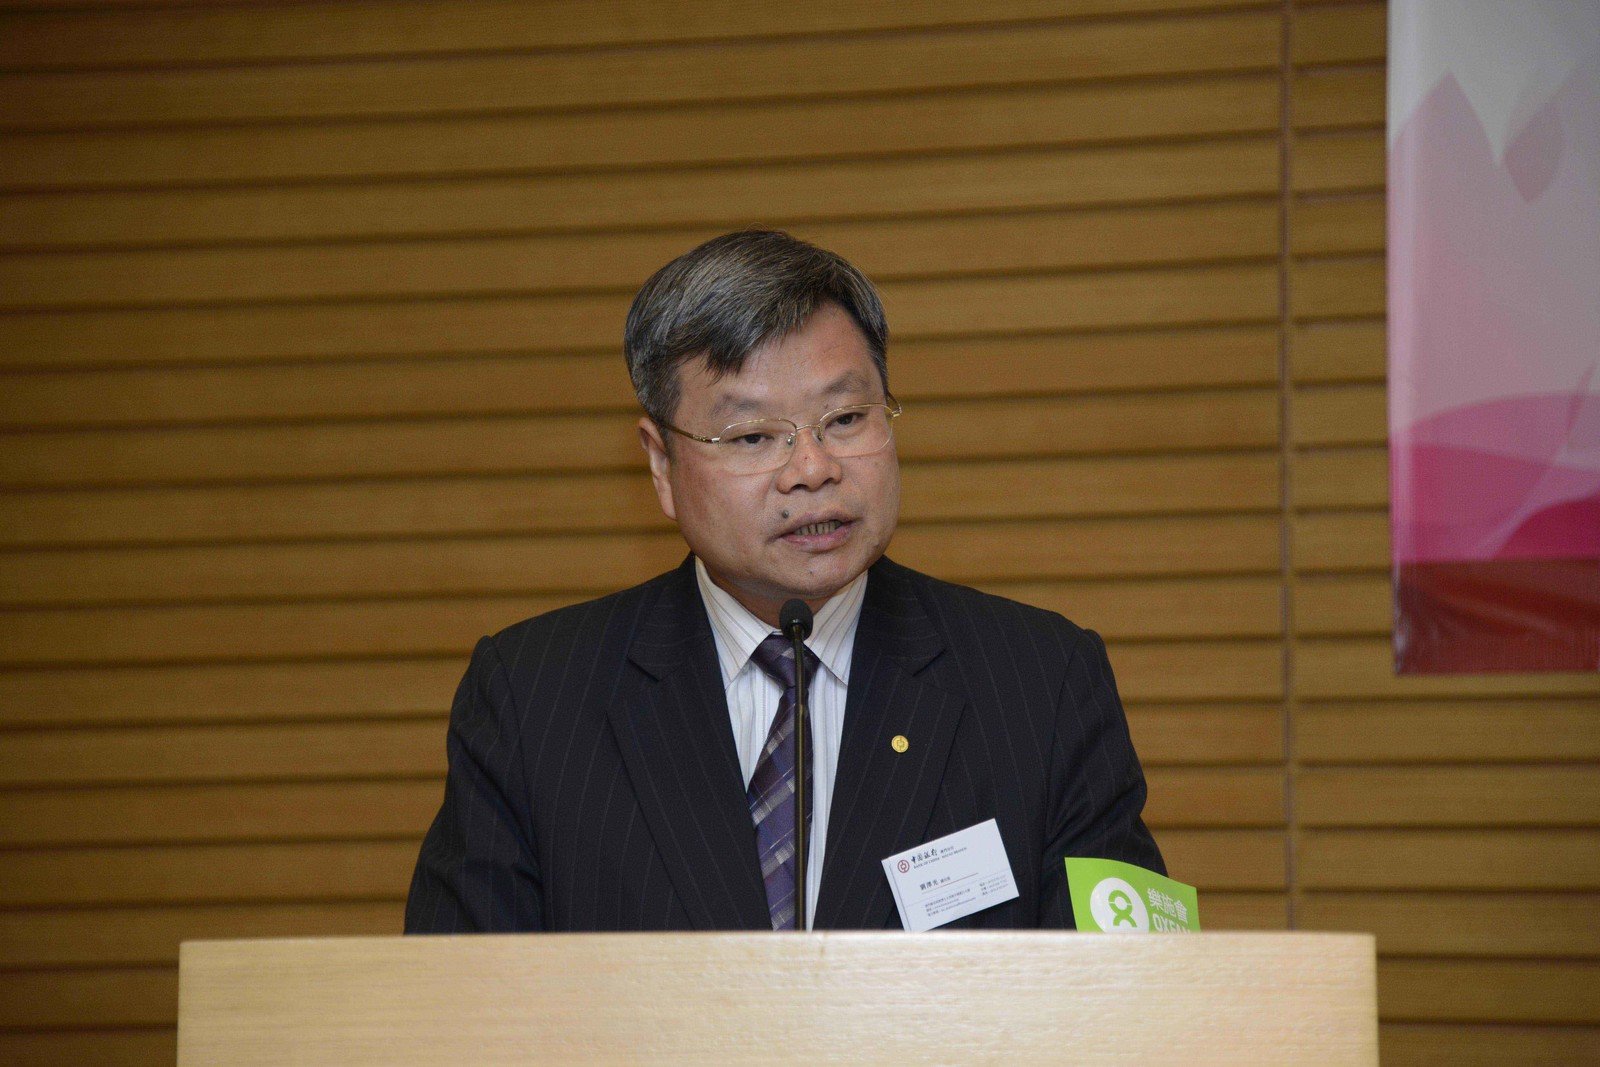 中国银行澳门分行副行长兼康乐委员会会长刘泽光先生致辞。